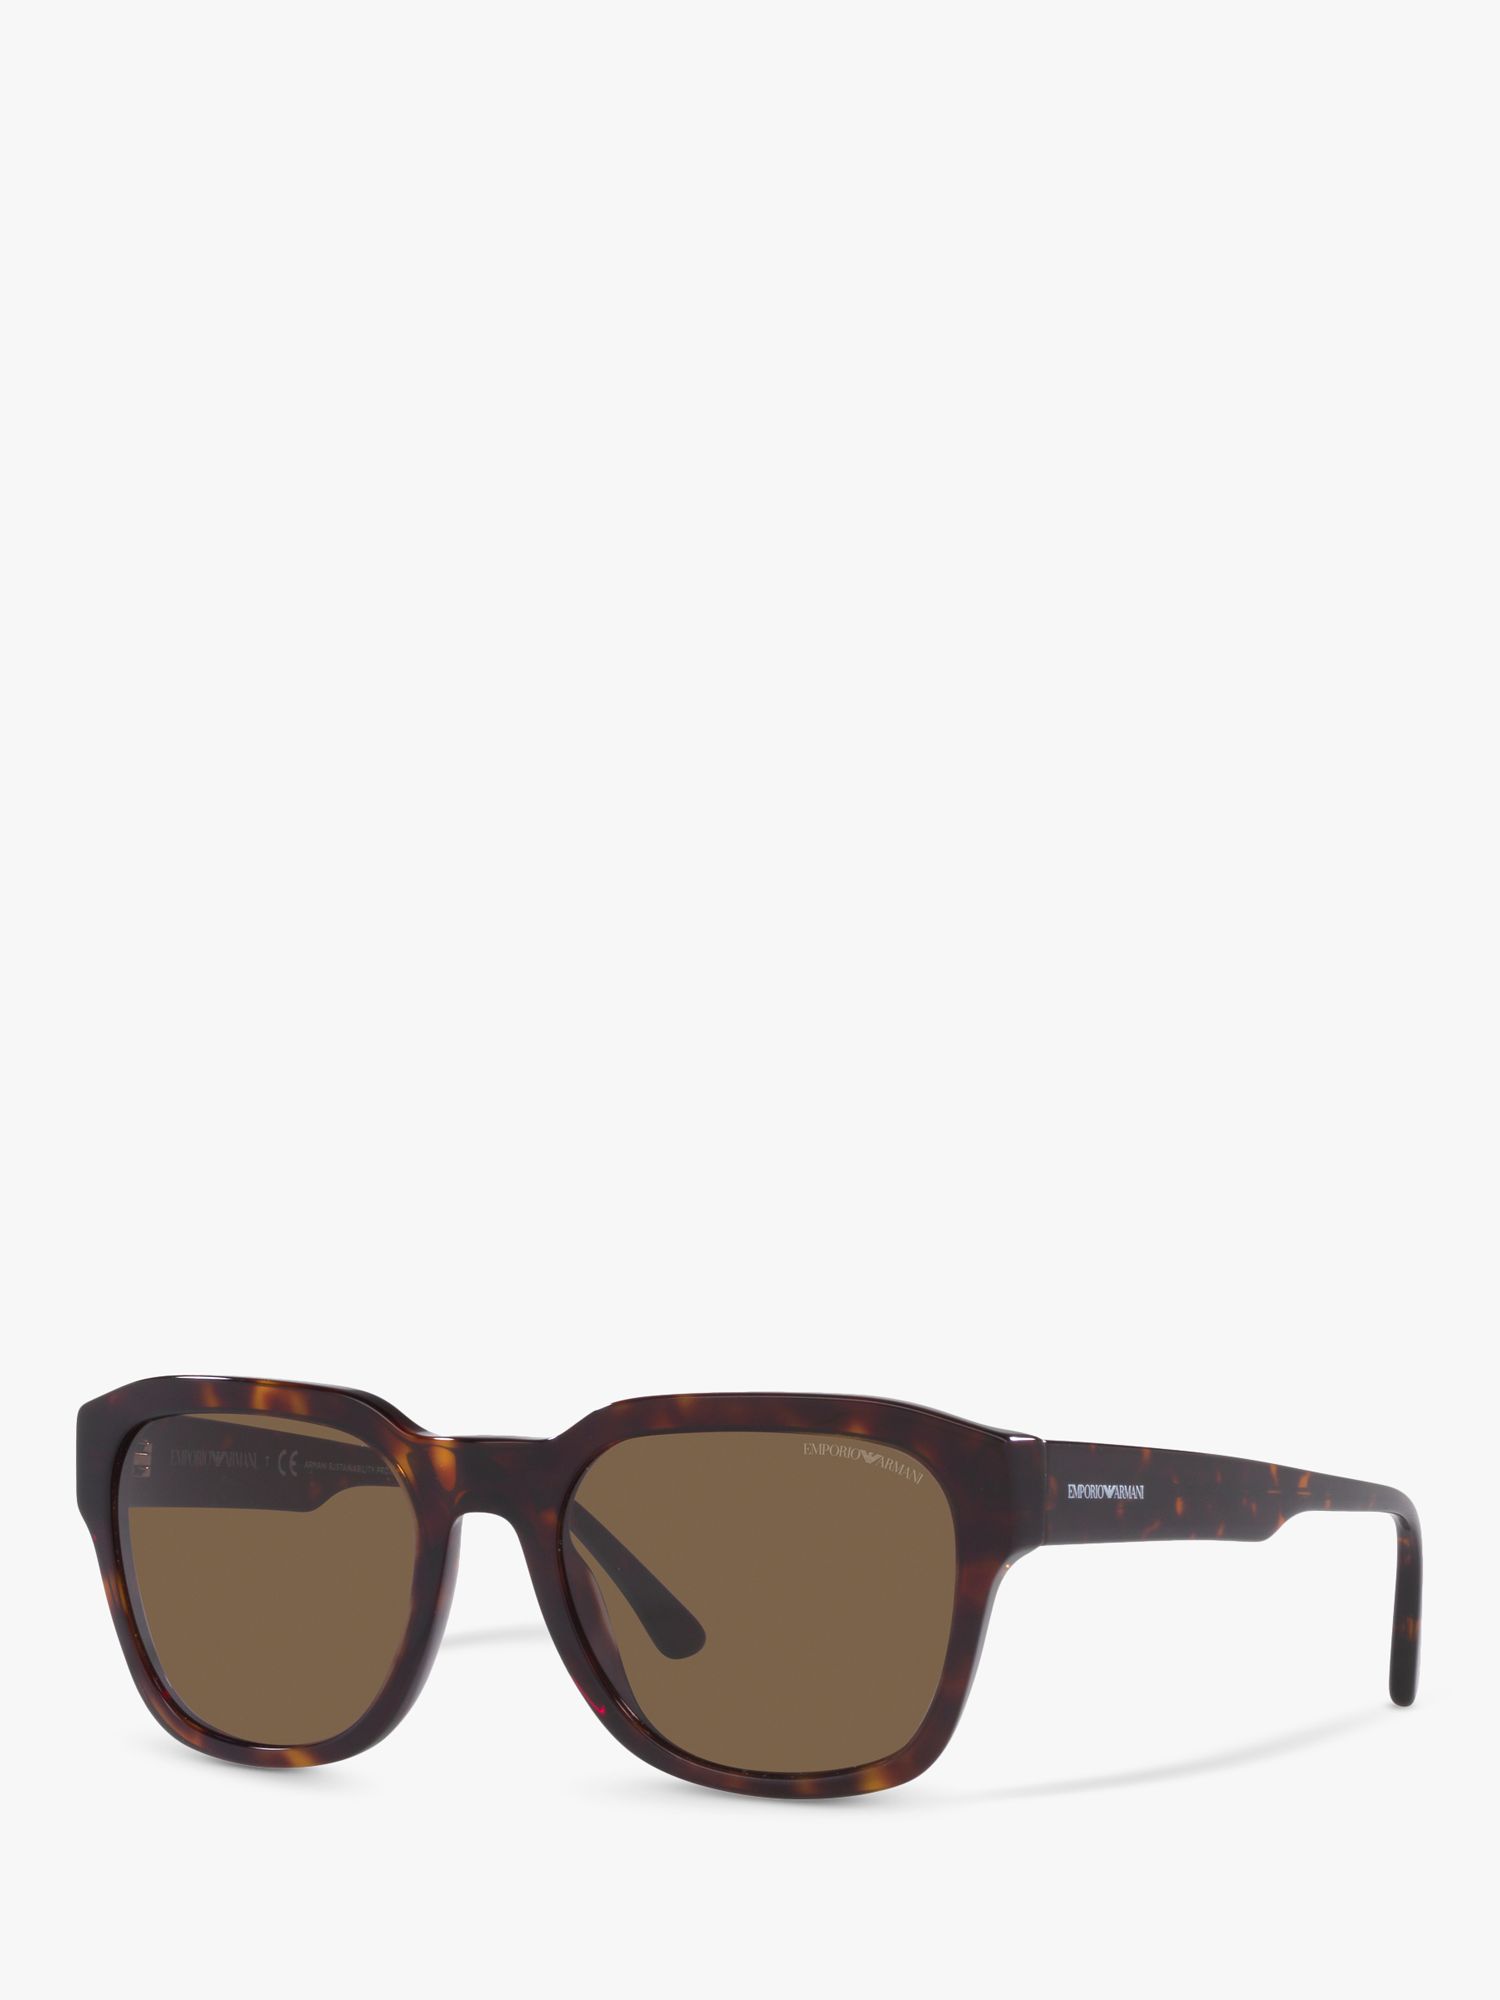 Emporio Armani EA4175 Мужские квадратные солнцезащитные очки, блестящие гаванские/коричневые